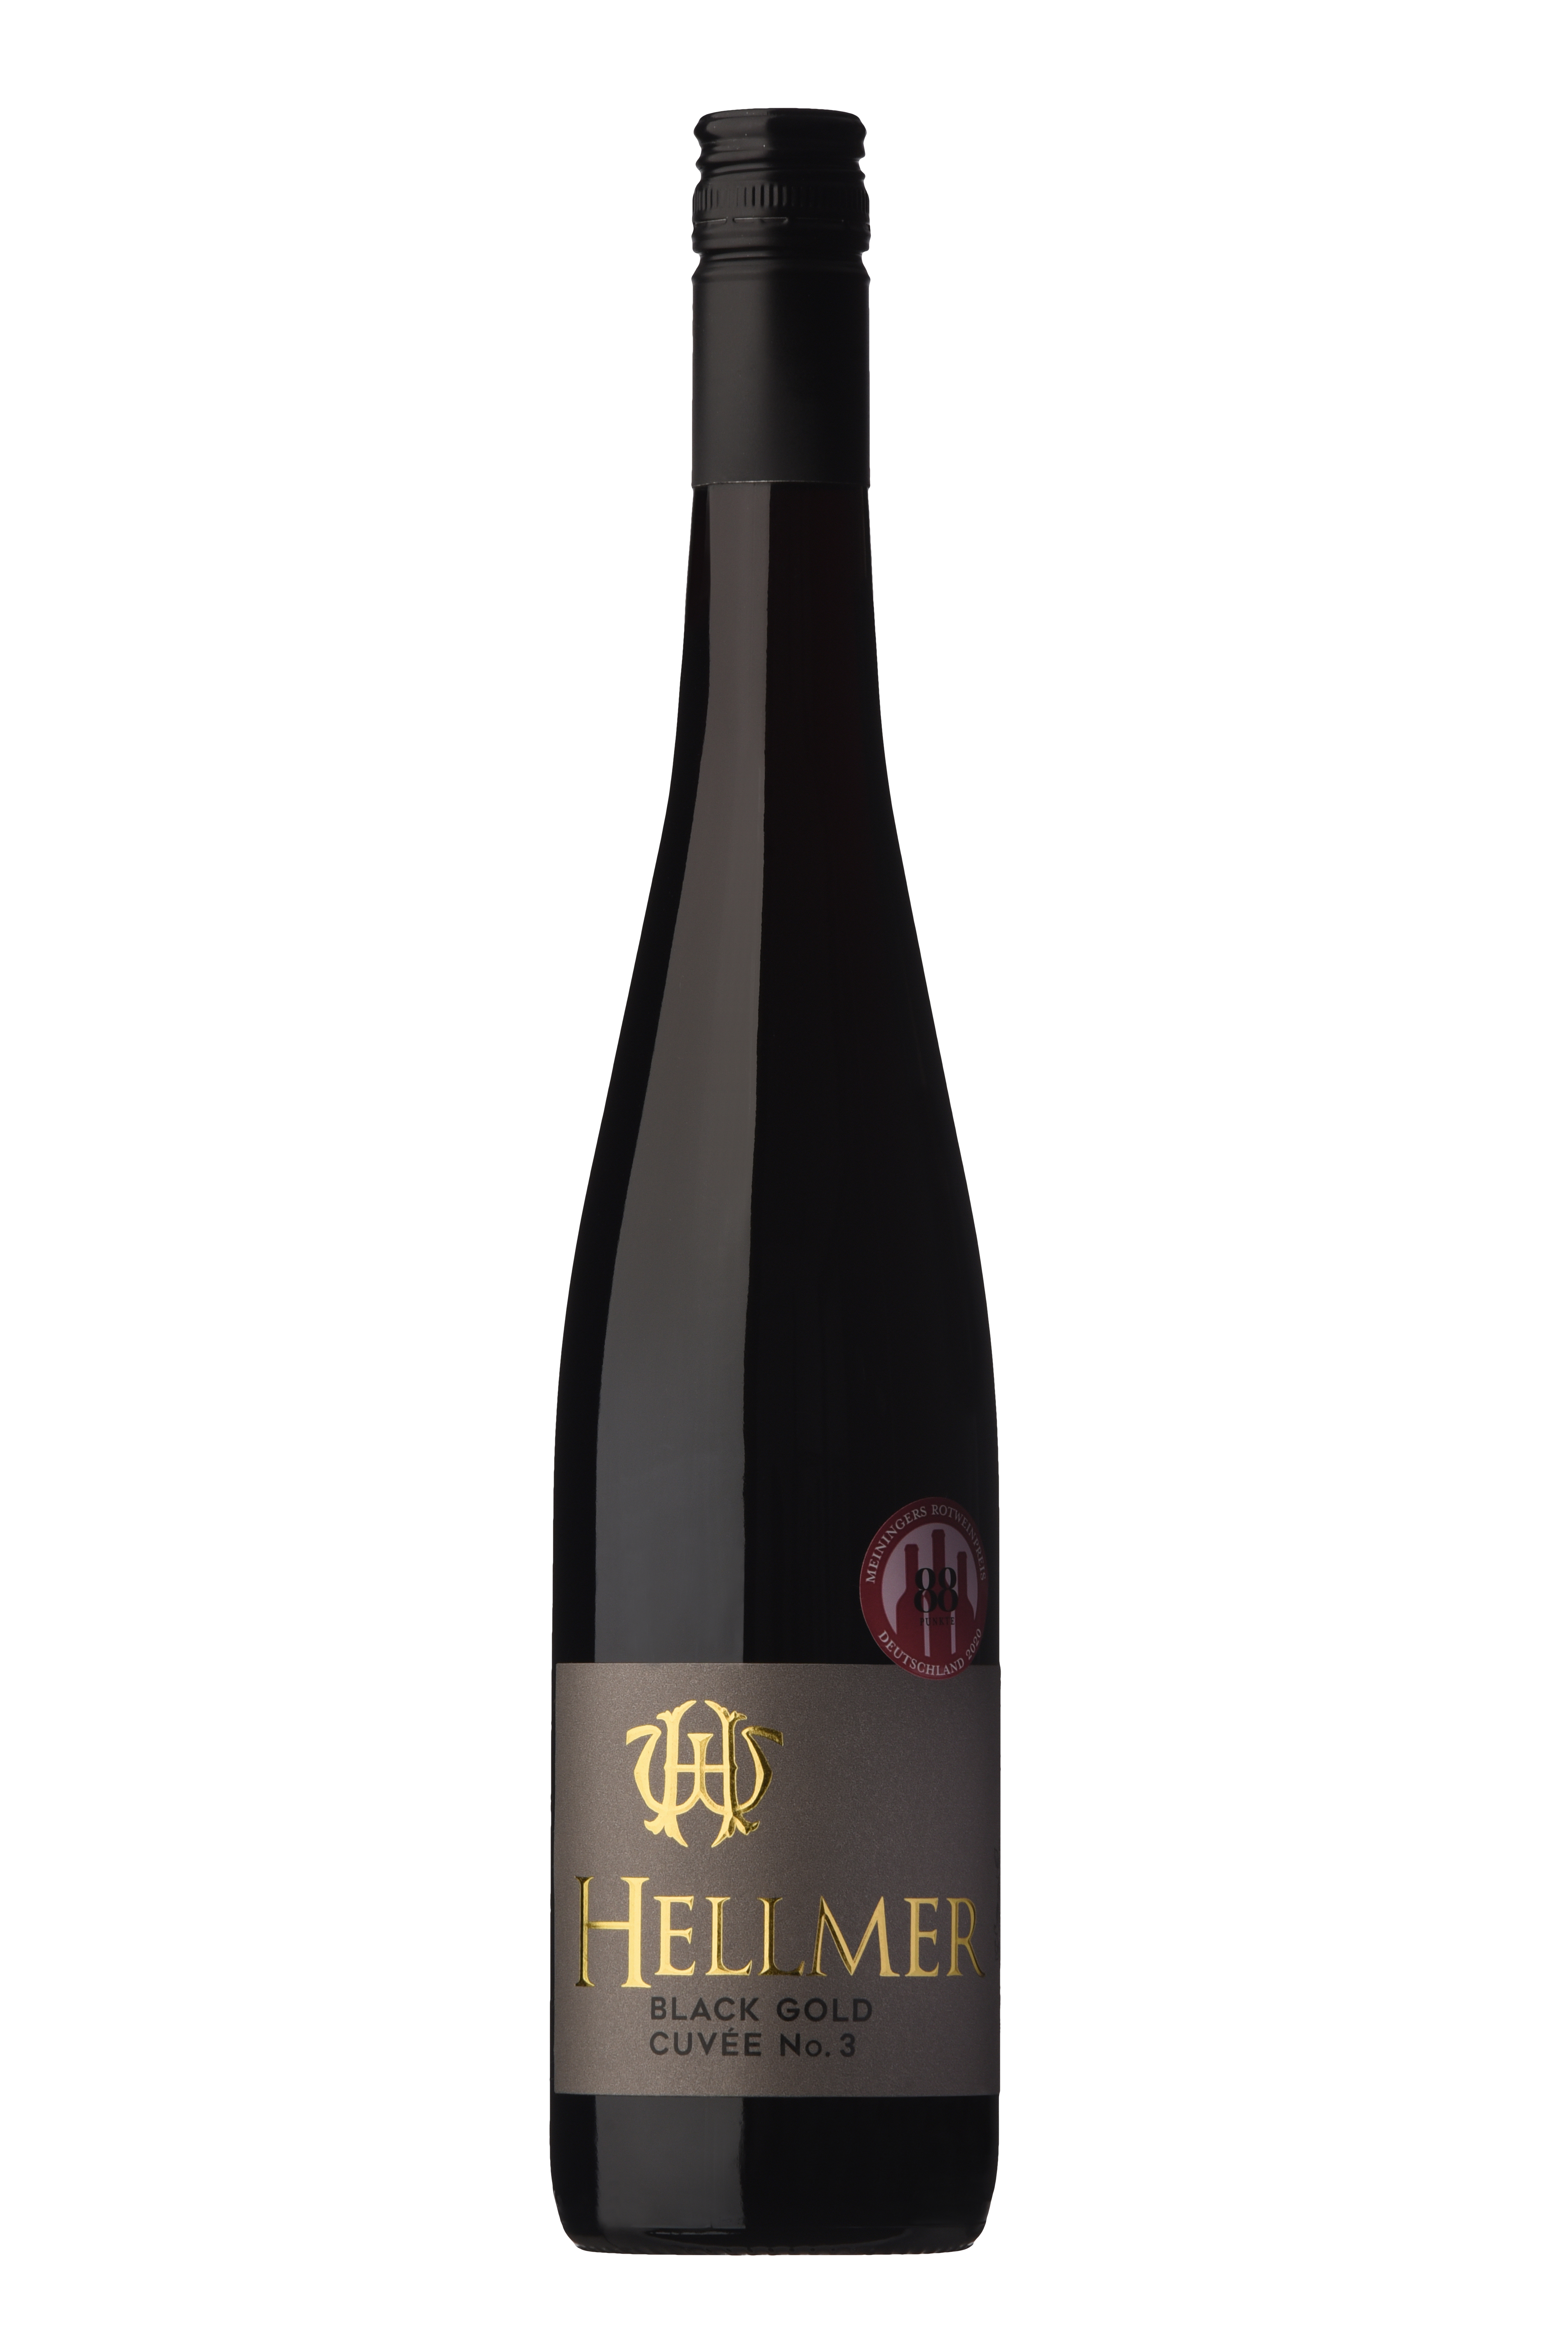 2017 Black Gold Cuvée No. 4 0,75 L - Weingut Hellmer